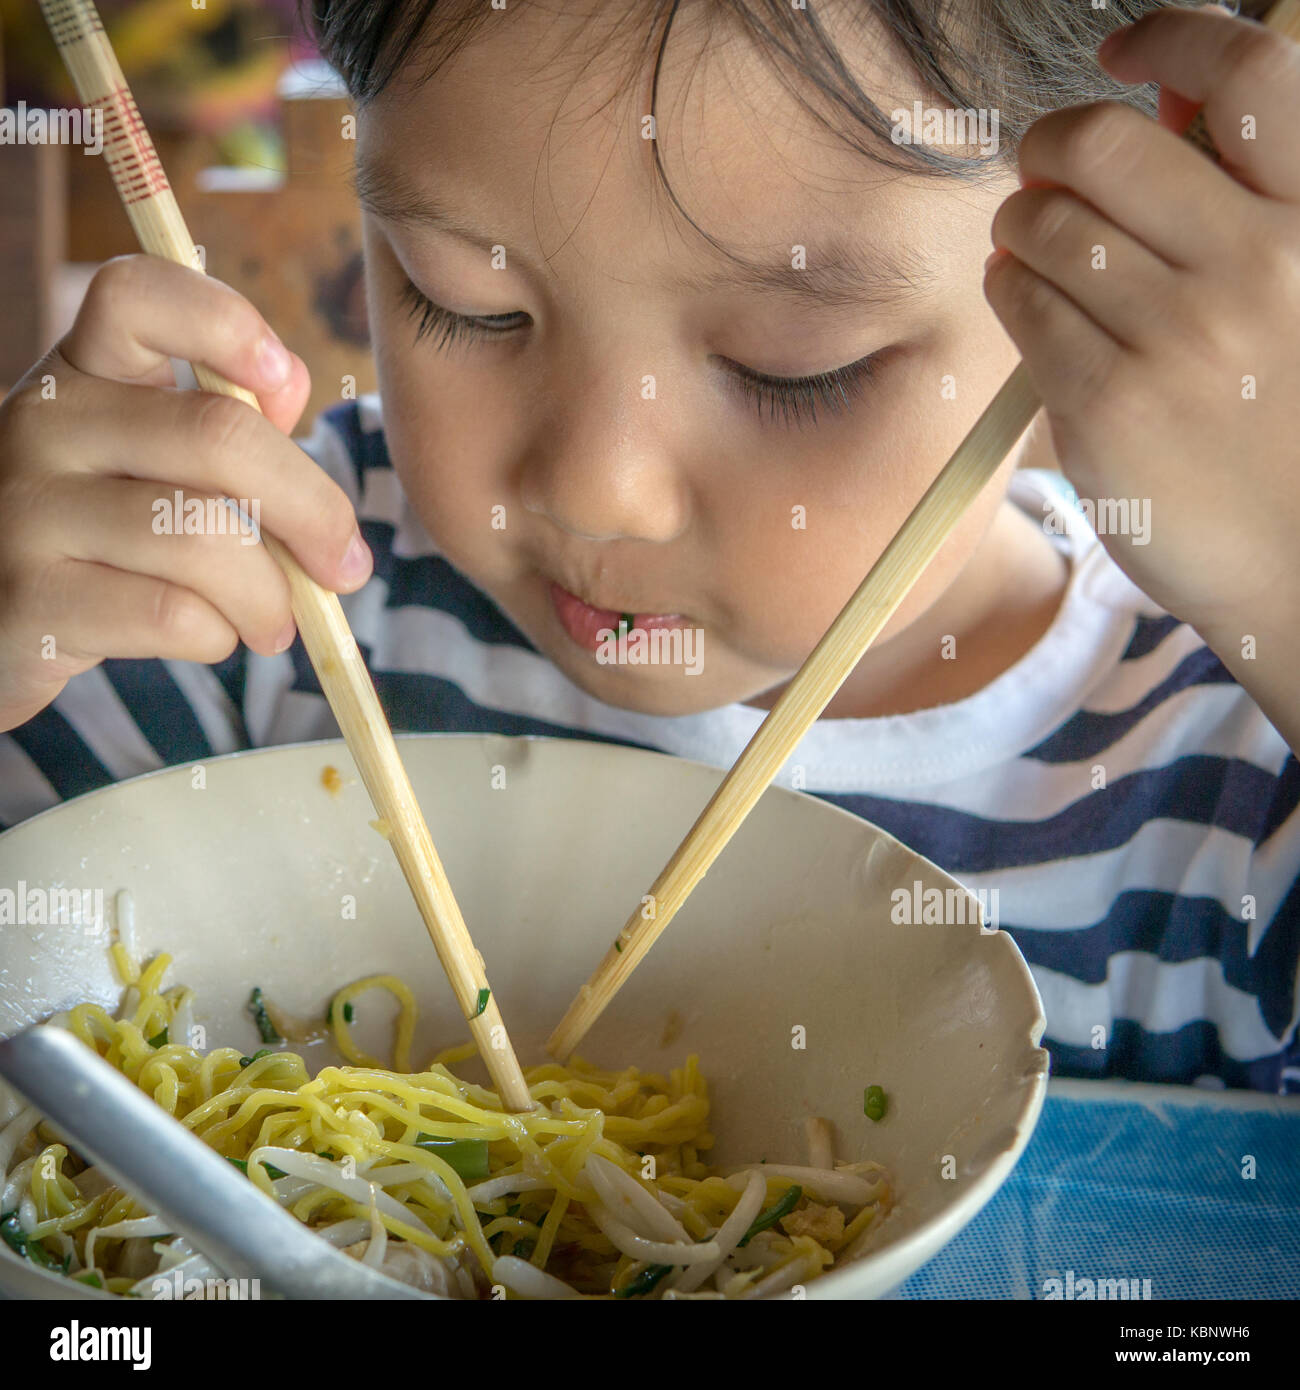 Kind mit Stäbchen Essen Nudel Stockfotografie - Alamy